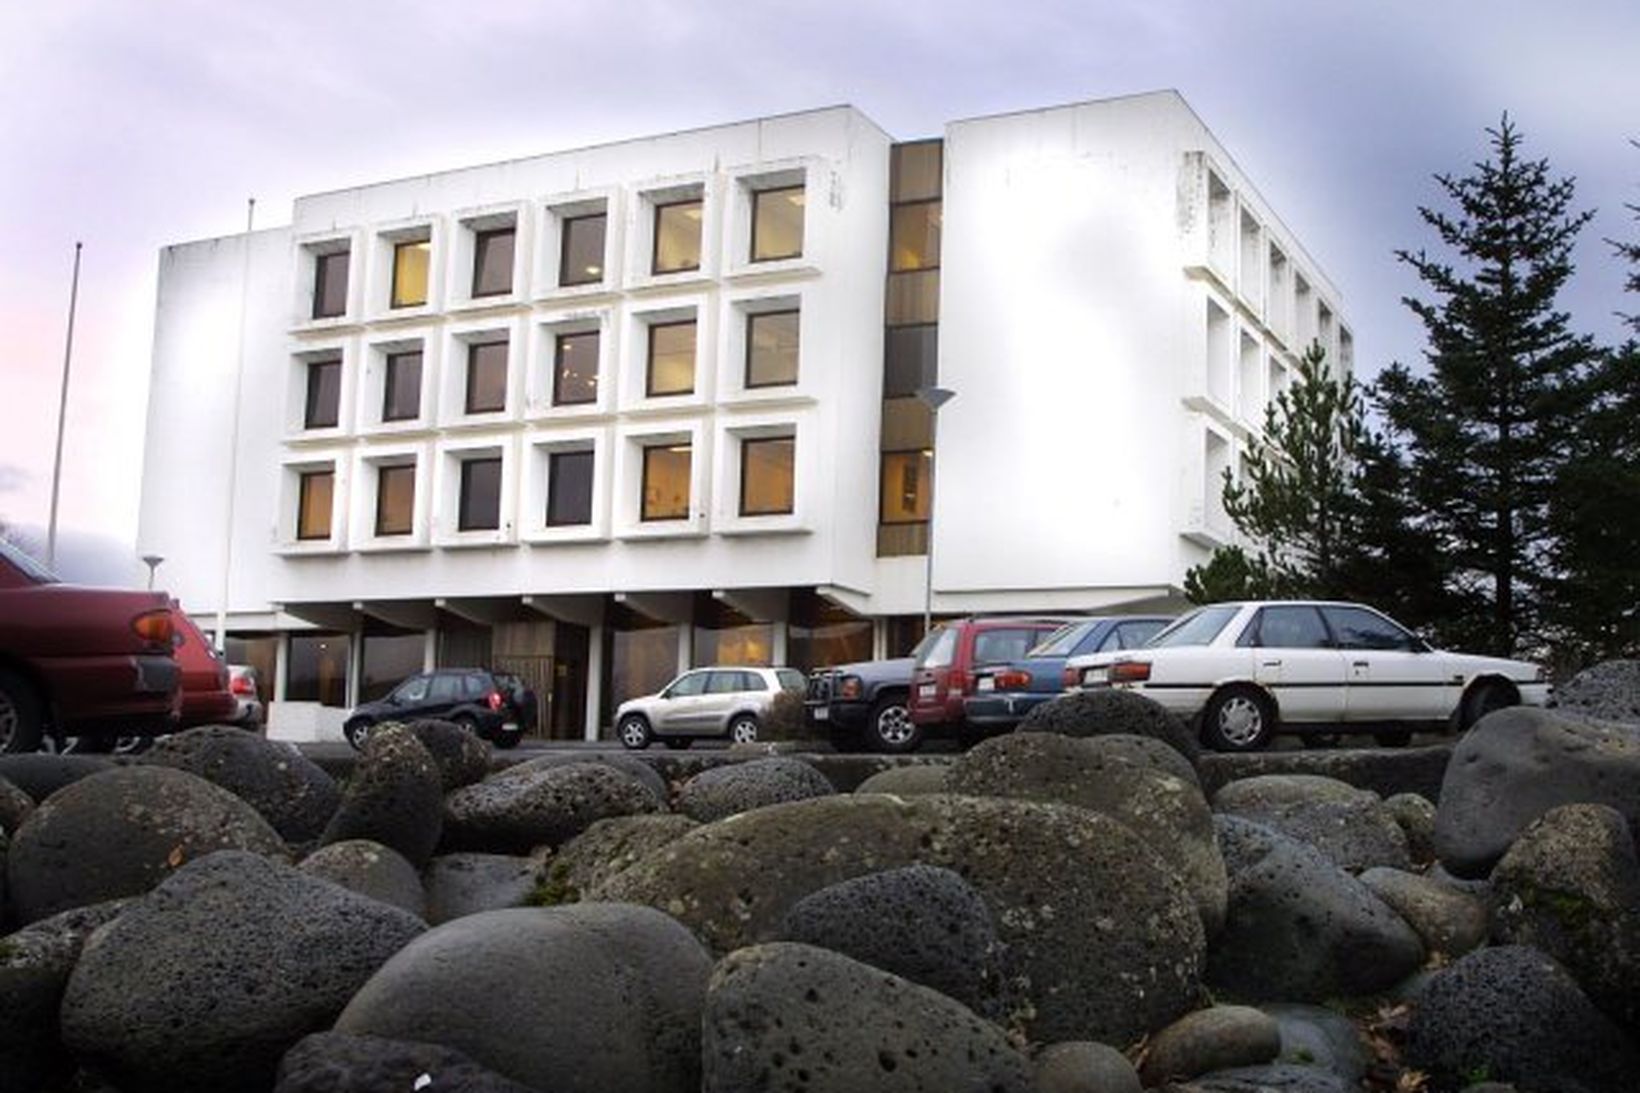 Valhöll, aðalbækistöð Sjálfstæðismanna í Reykjavík.